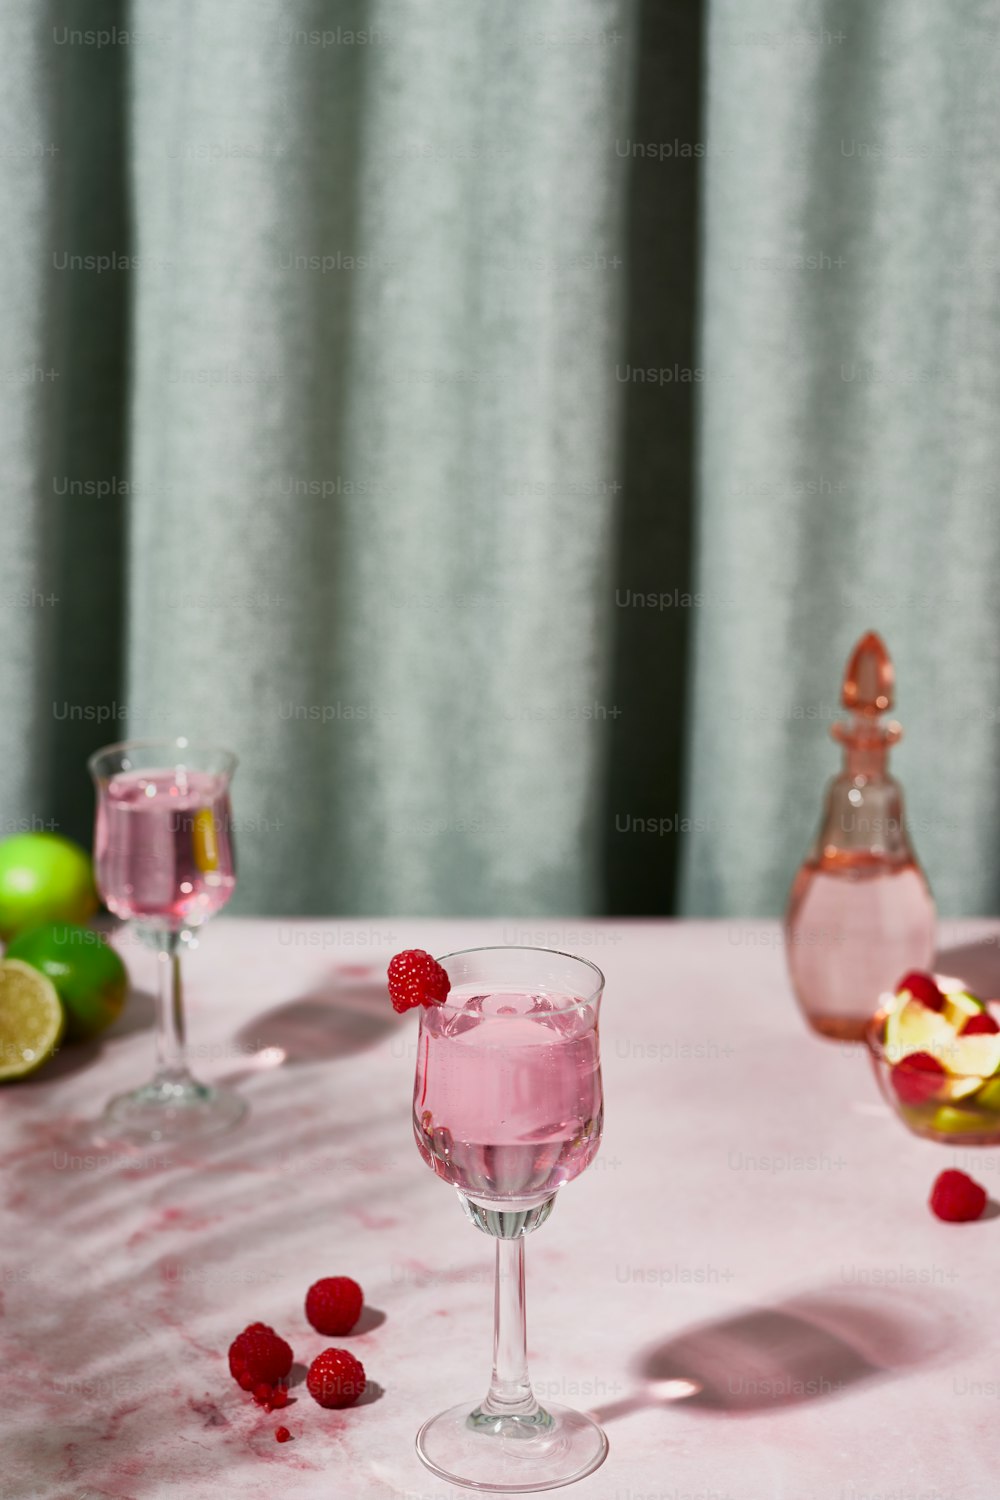 테이블에 나무 딸기 와인 두 잔